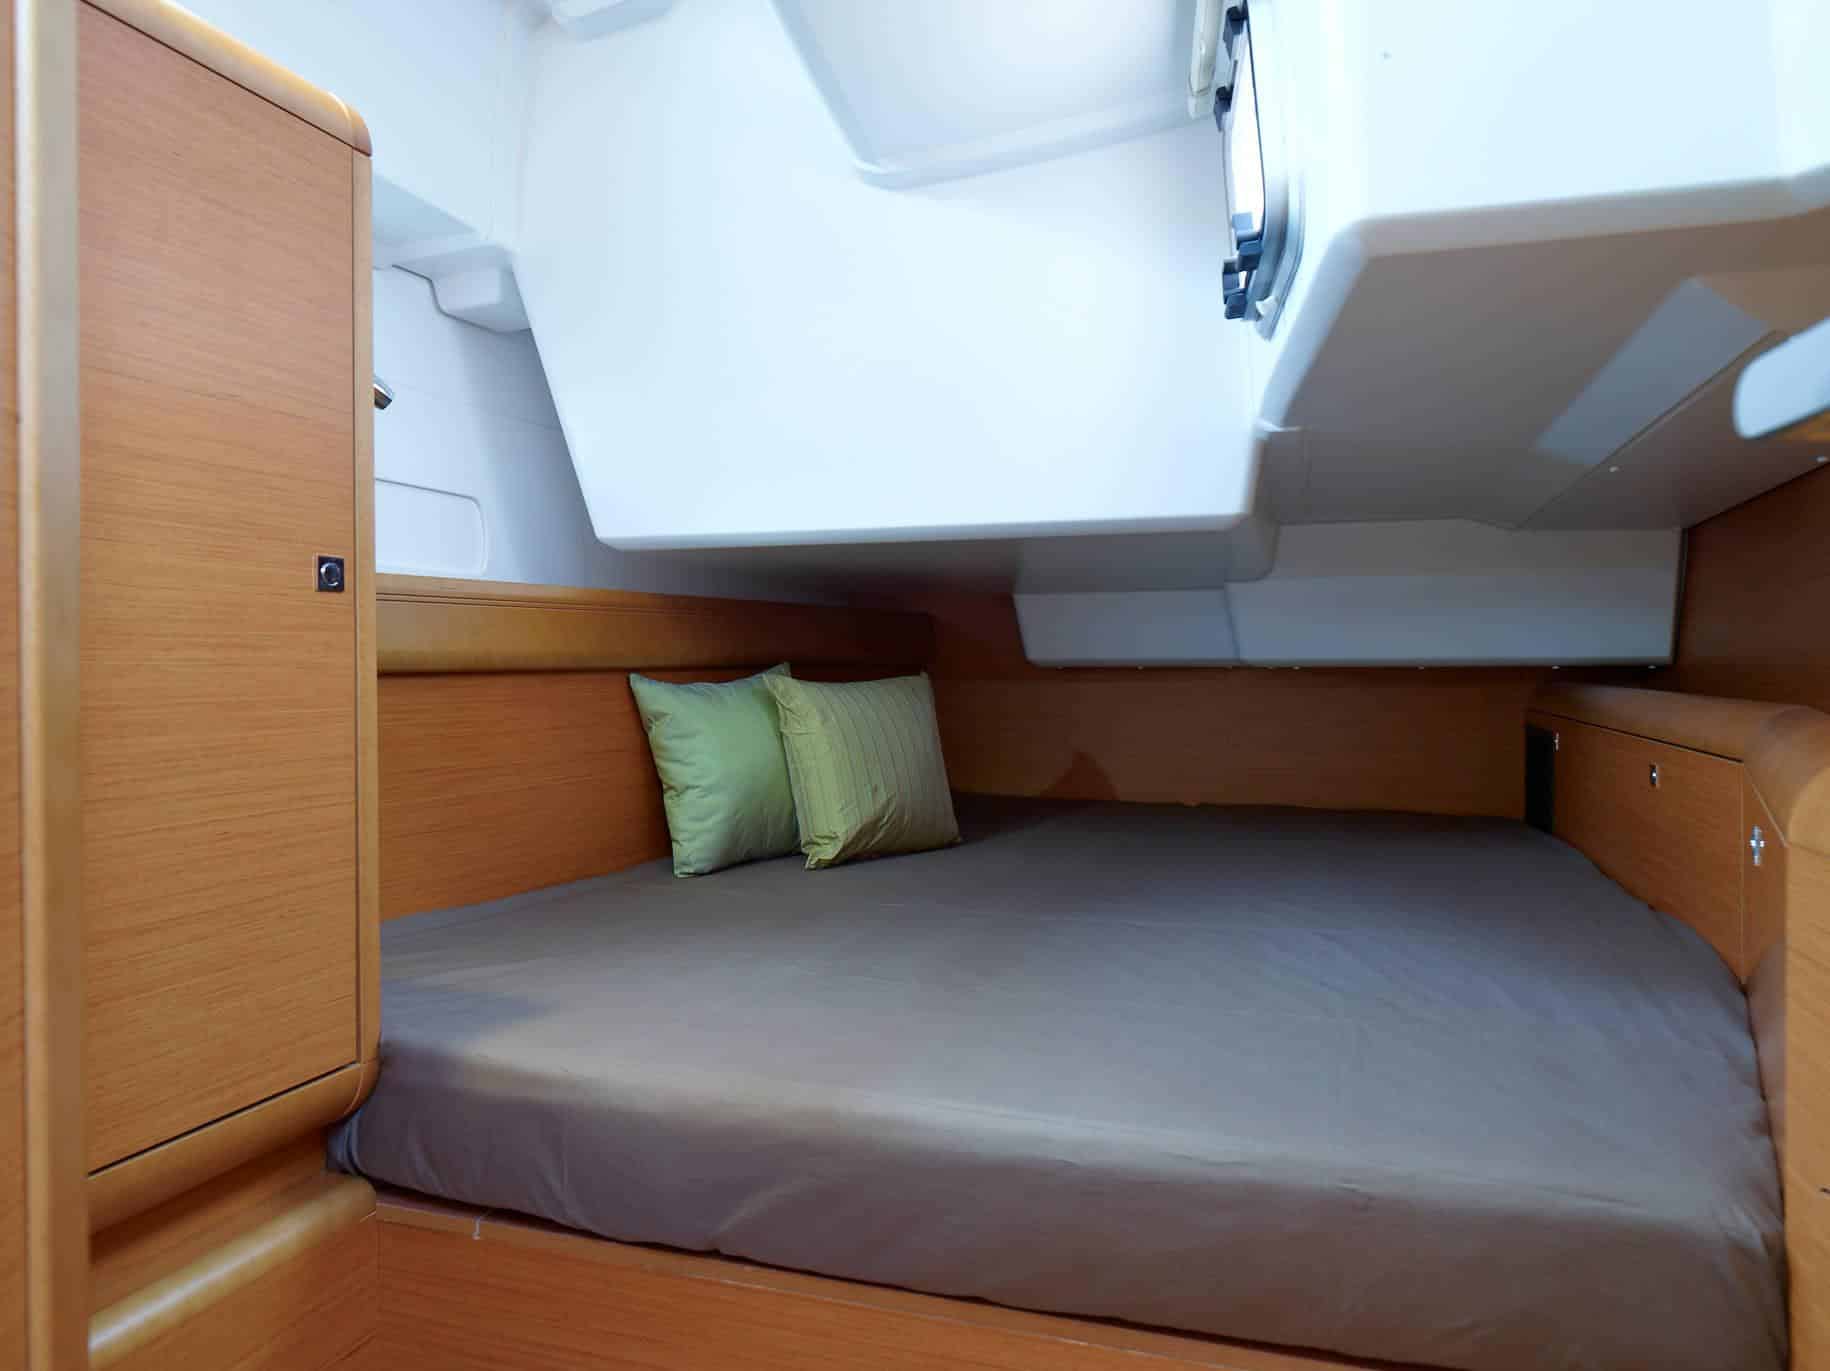 Innenansicht einer Segelyachtkabine mit einem kompakten Bett mit grauer Decke und grünem Kissen, umgeben von Holzpaneelen und einem kleinen Fenster darüber.